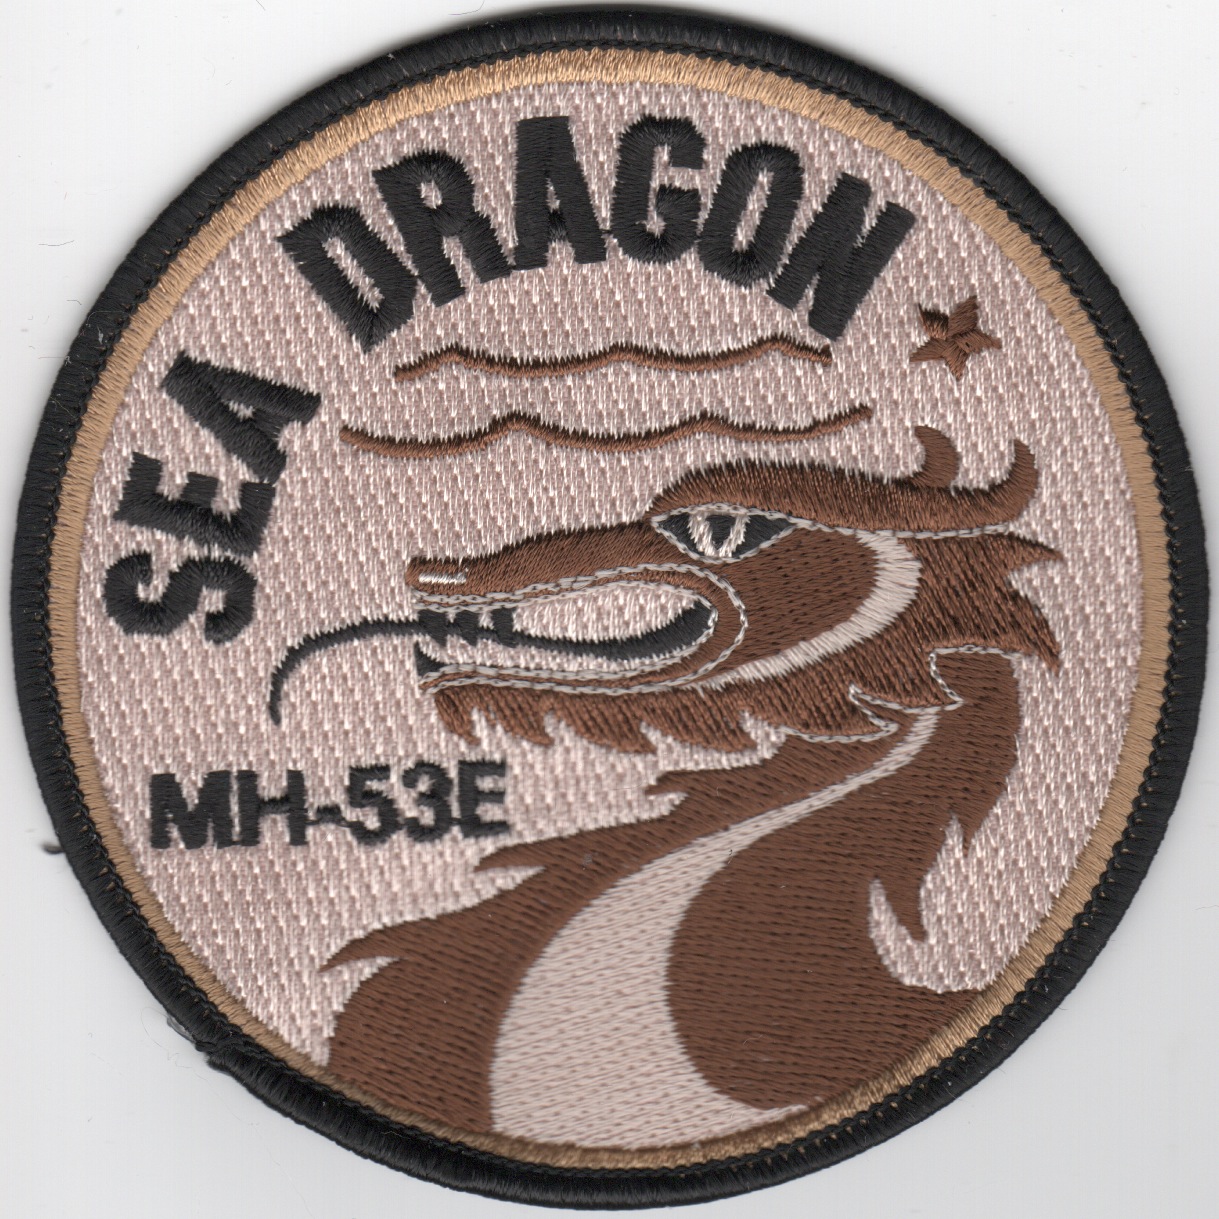 MH-53E 'Sea Dragon' (Des)